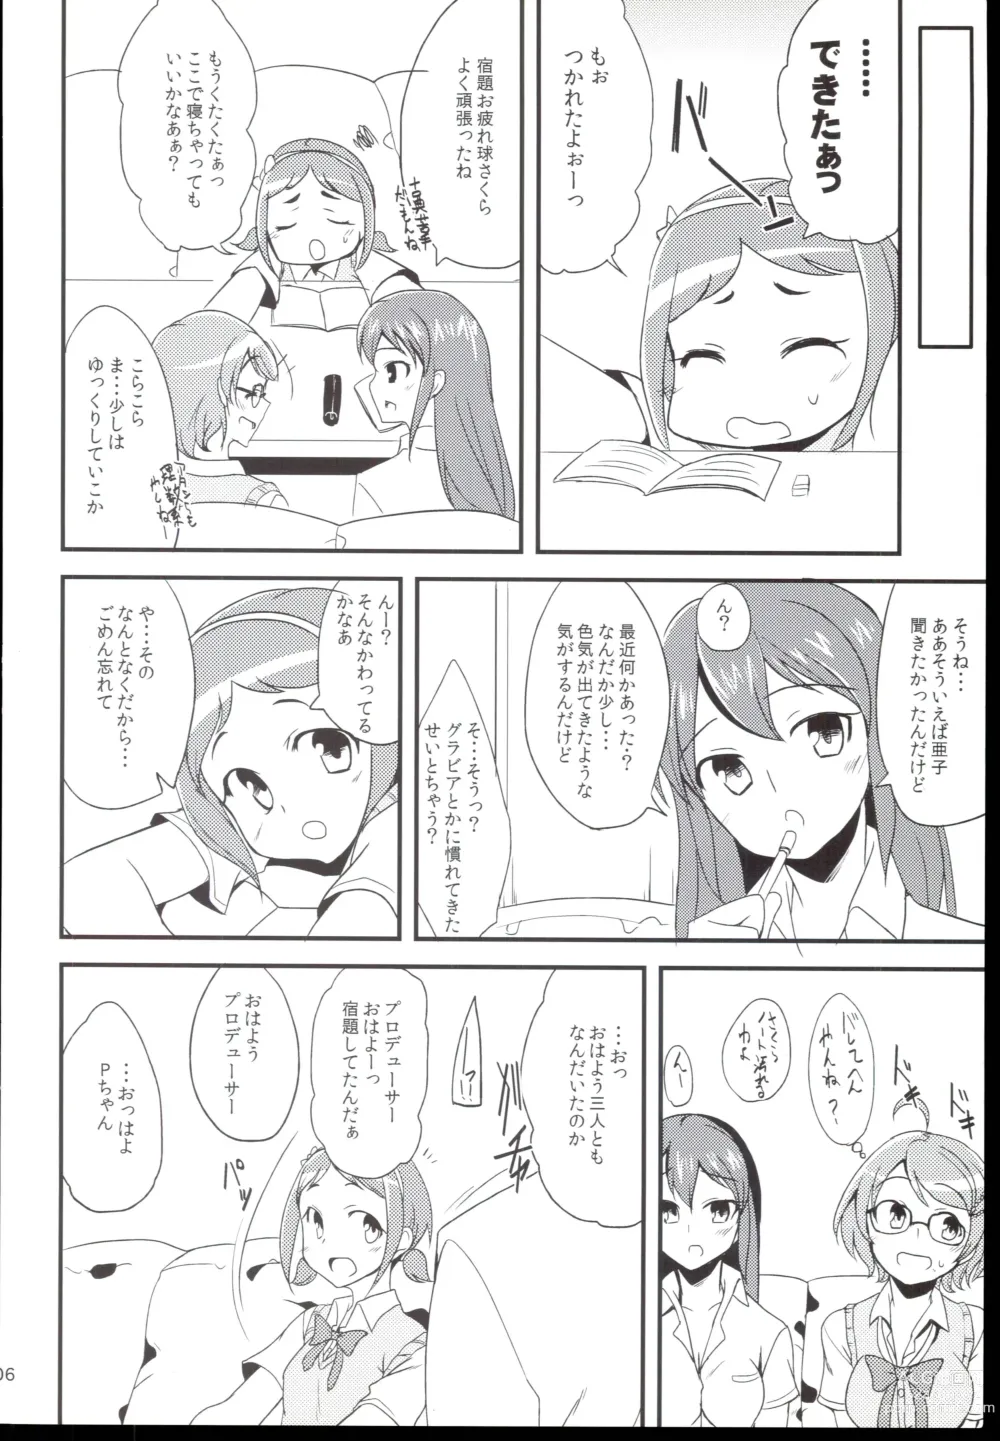 Page 6 of doujinshi Futari no Kankei.